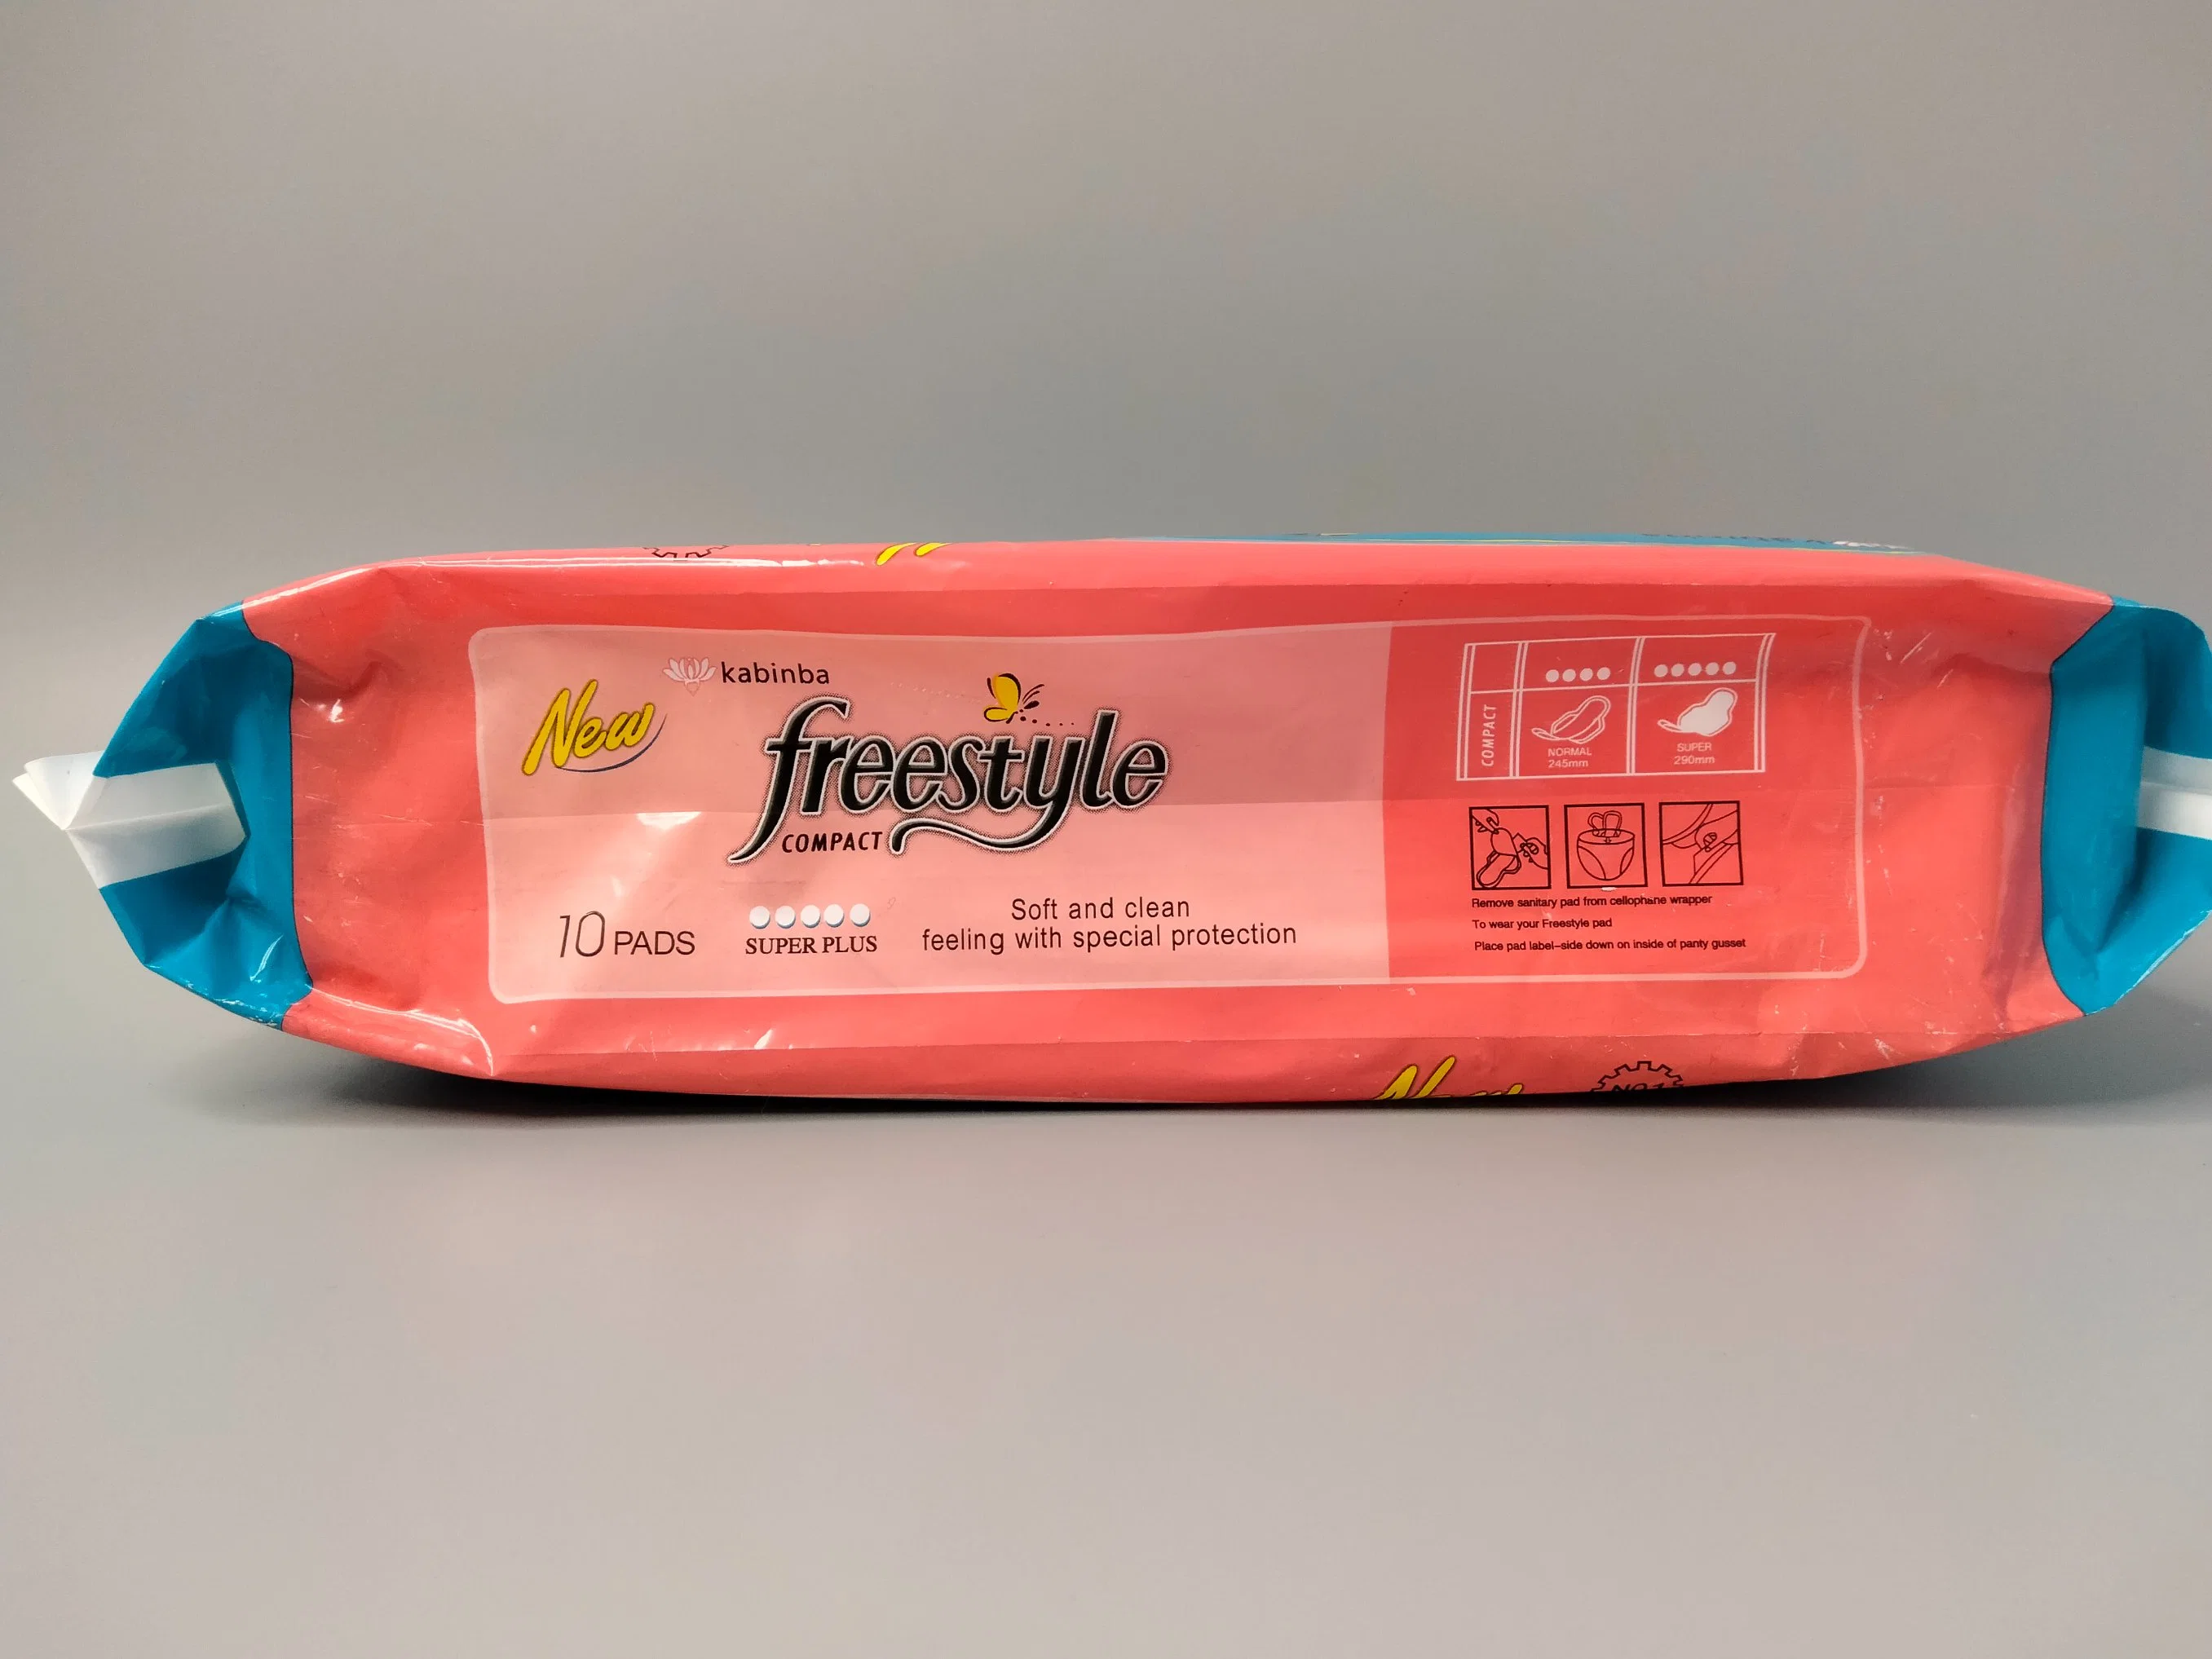 Logotipo personalizado Freestyle antibacteriano suave y super limpio, además de toalla sanitaria desechable para la noche